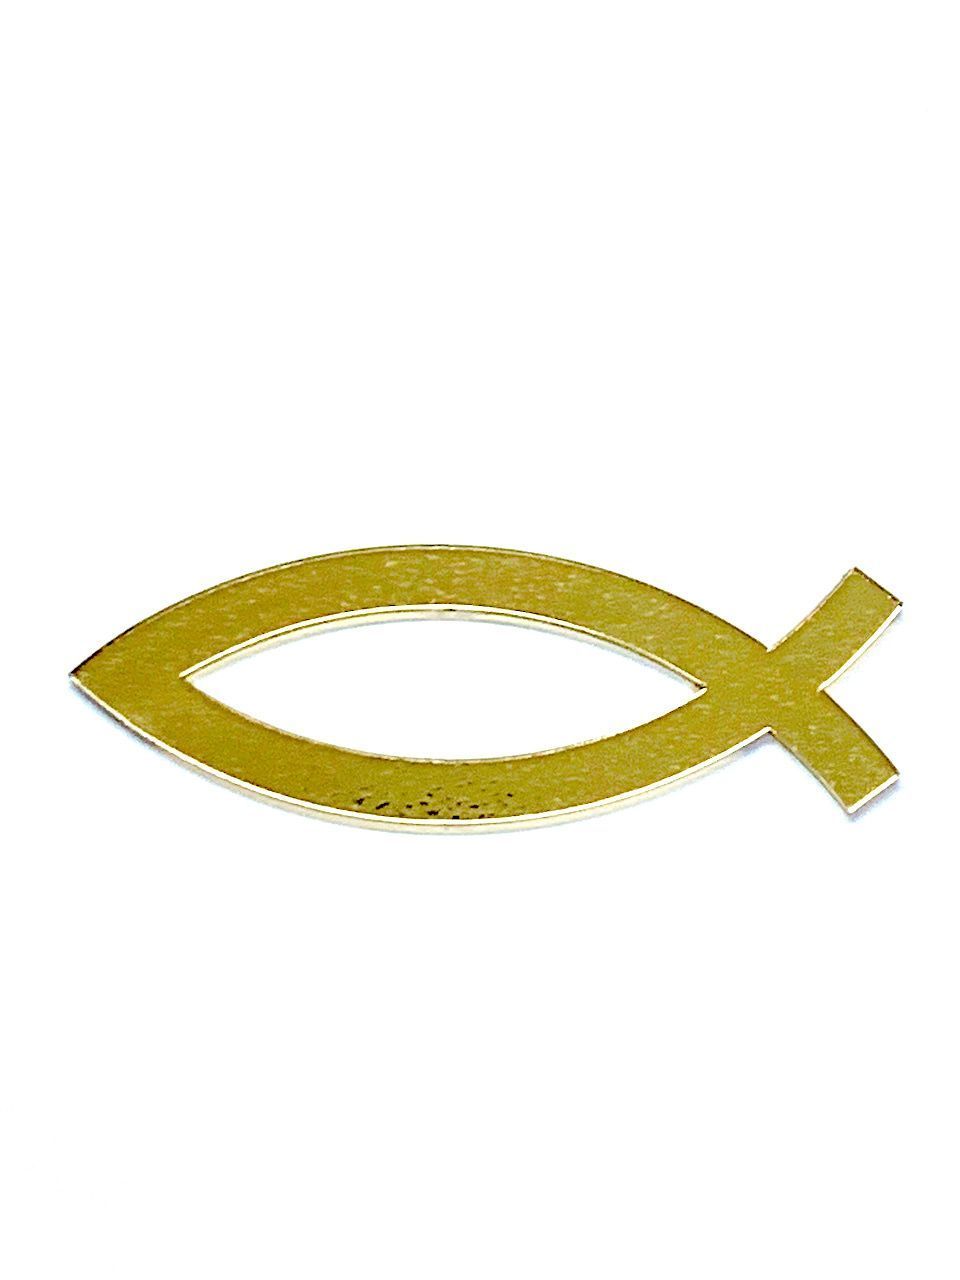 Наклейка "Рыбка" пластик 4,5*1,5  см, толщина 3 мм, цвет золото